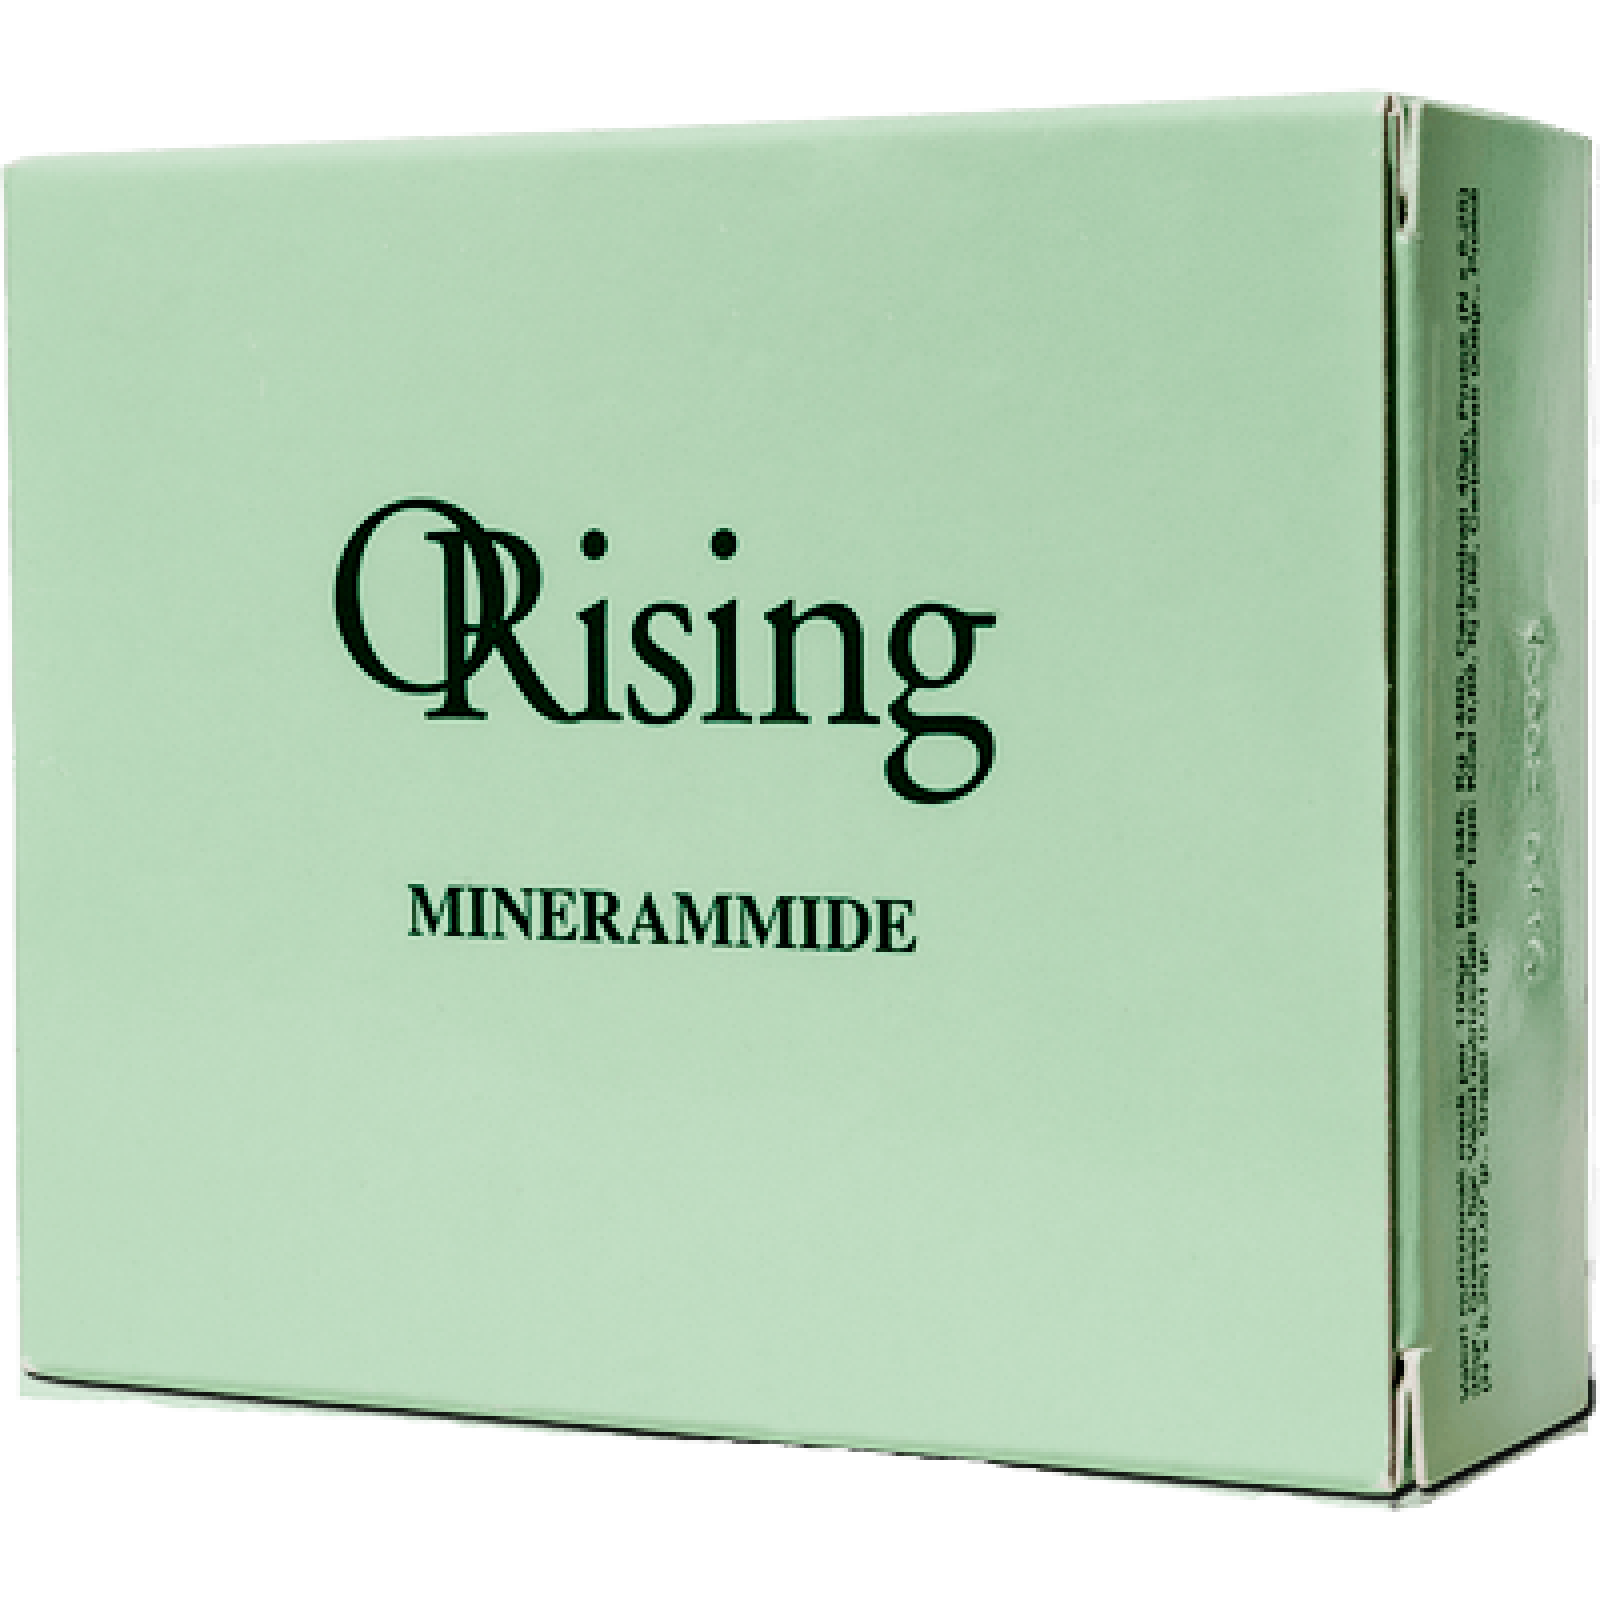 Витамины-Минераммиды для насыщения масок, ампул и шампуней Orising Minerammide